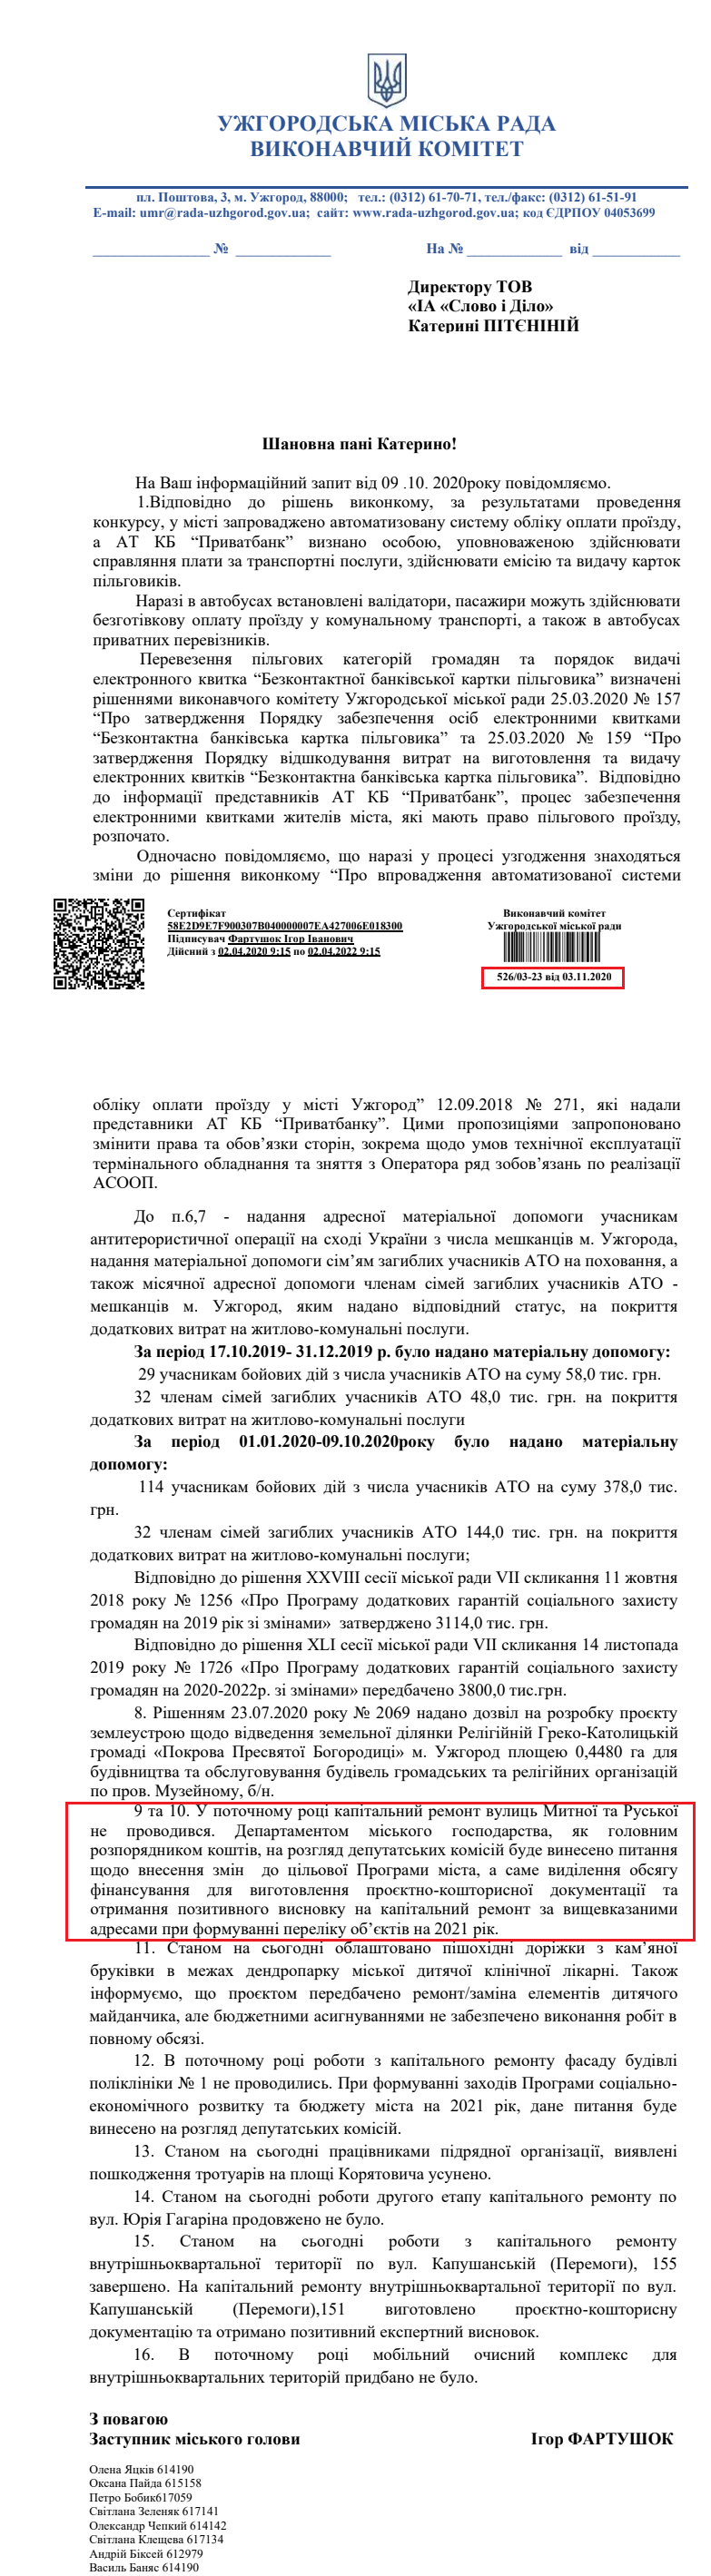 Лист Ужгородської міської ради від 3 листопада 2020 року